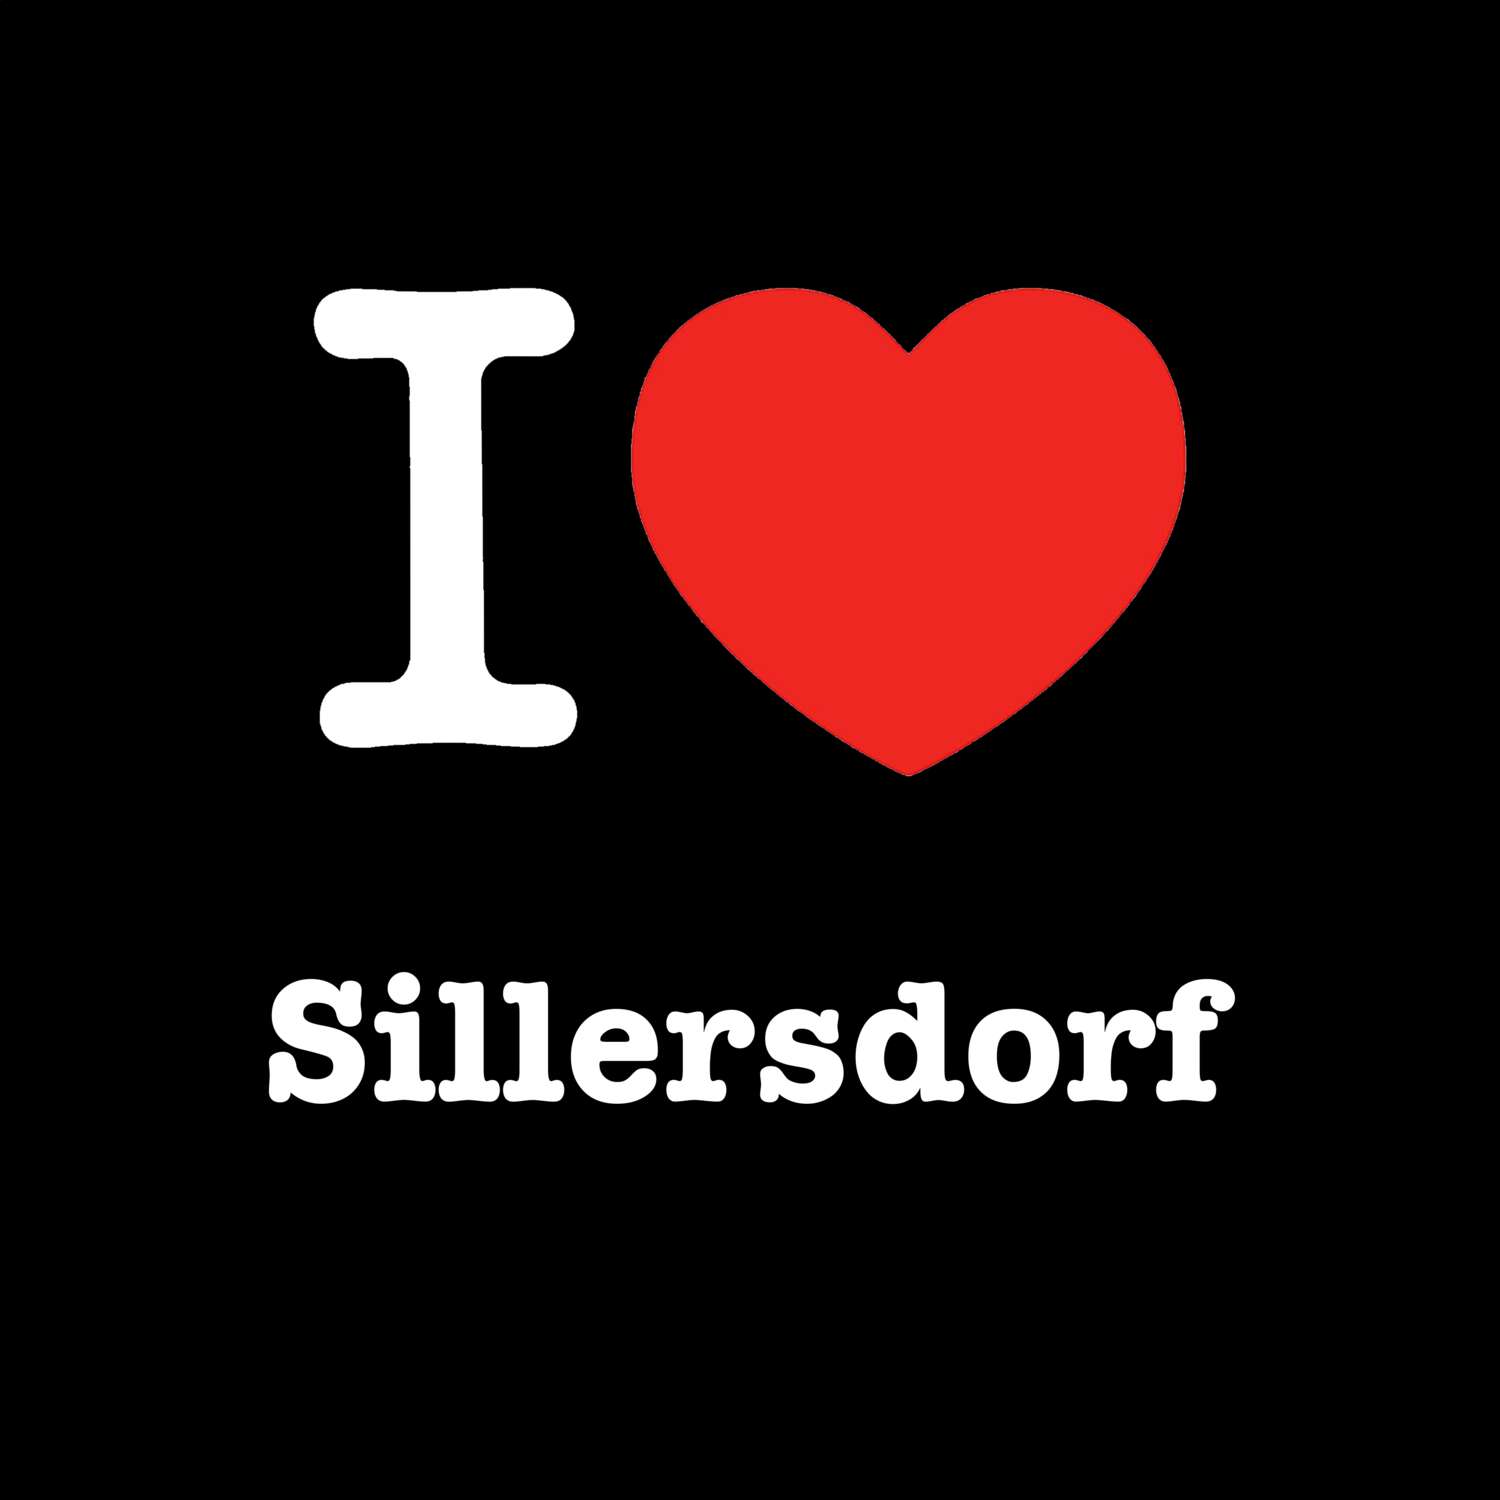 Sillersdorf T-Shirt »I love«